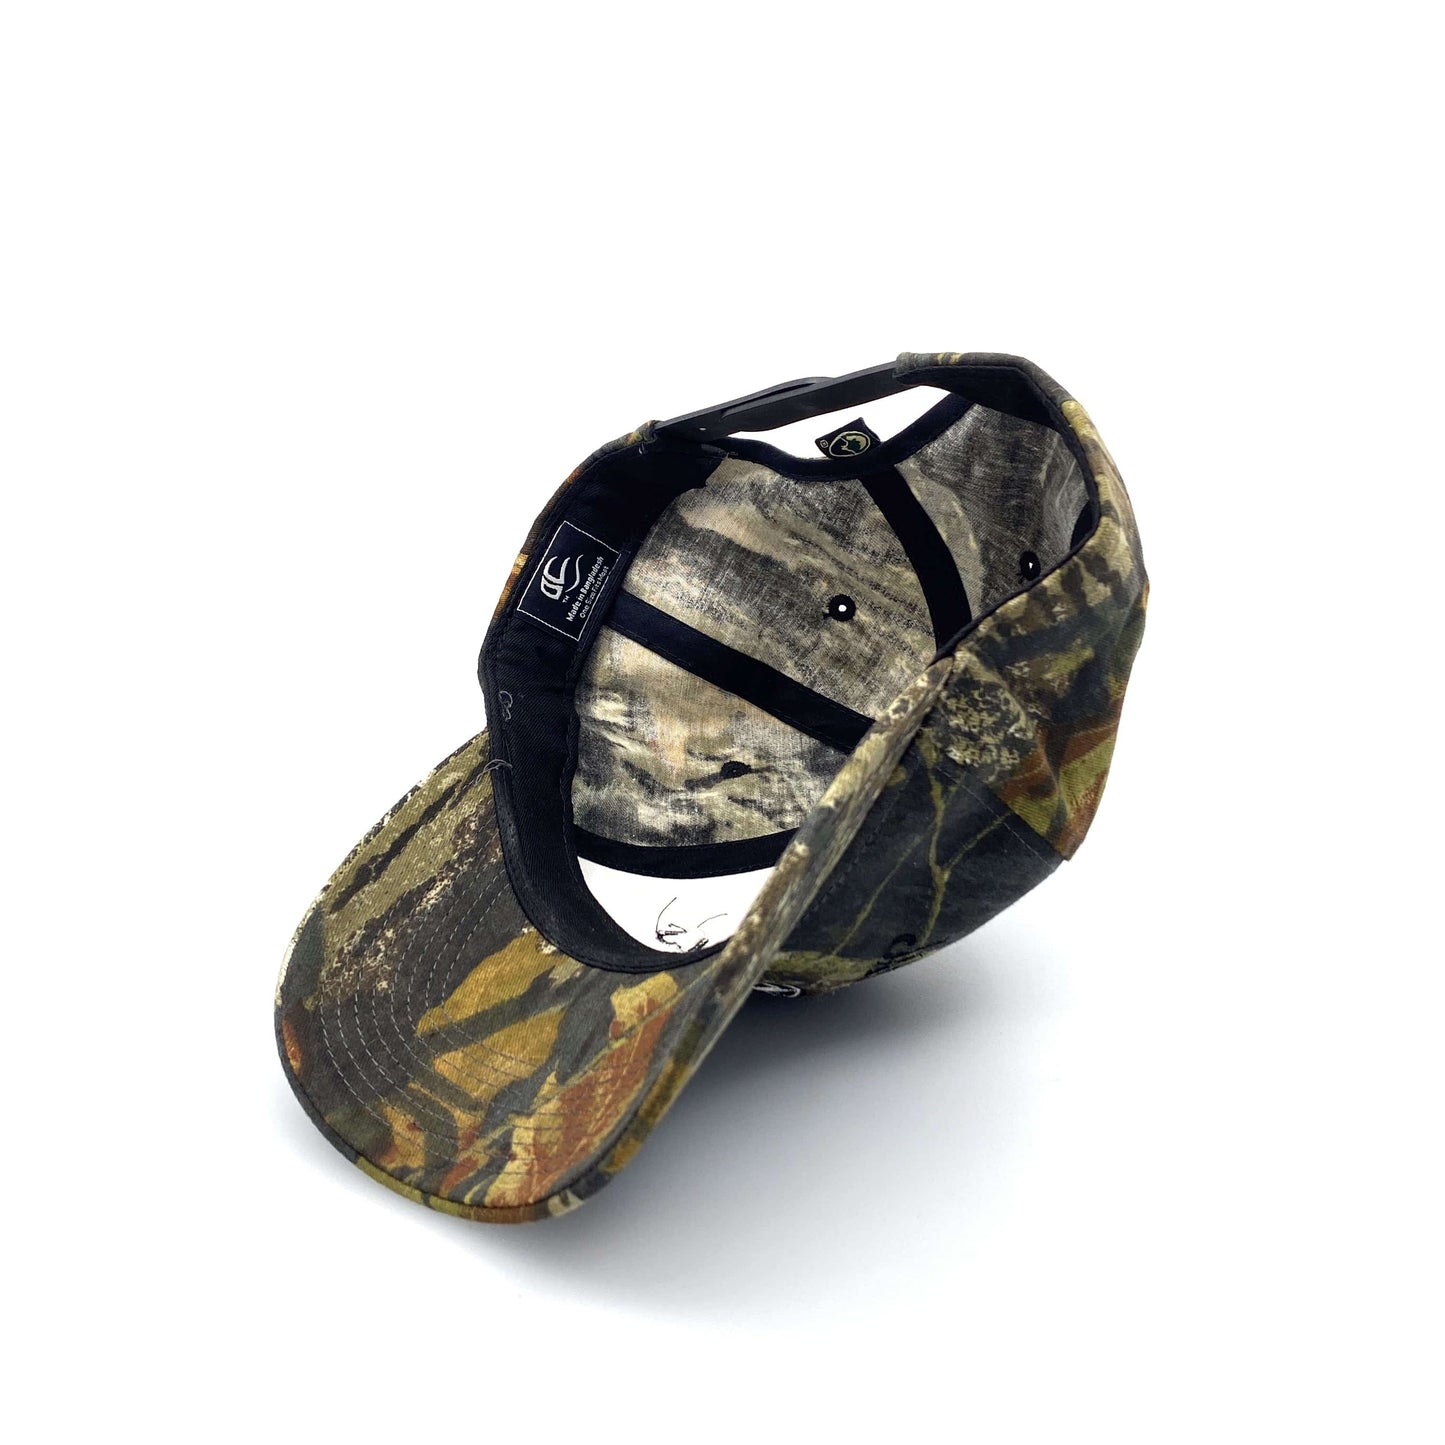 Jack Daniel’s Old No. 7 Mens “Outdoor Cap” SnapBack Camo Baseball Hat